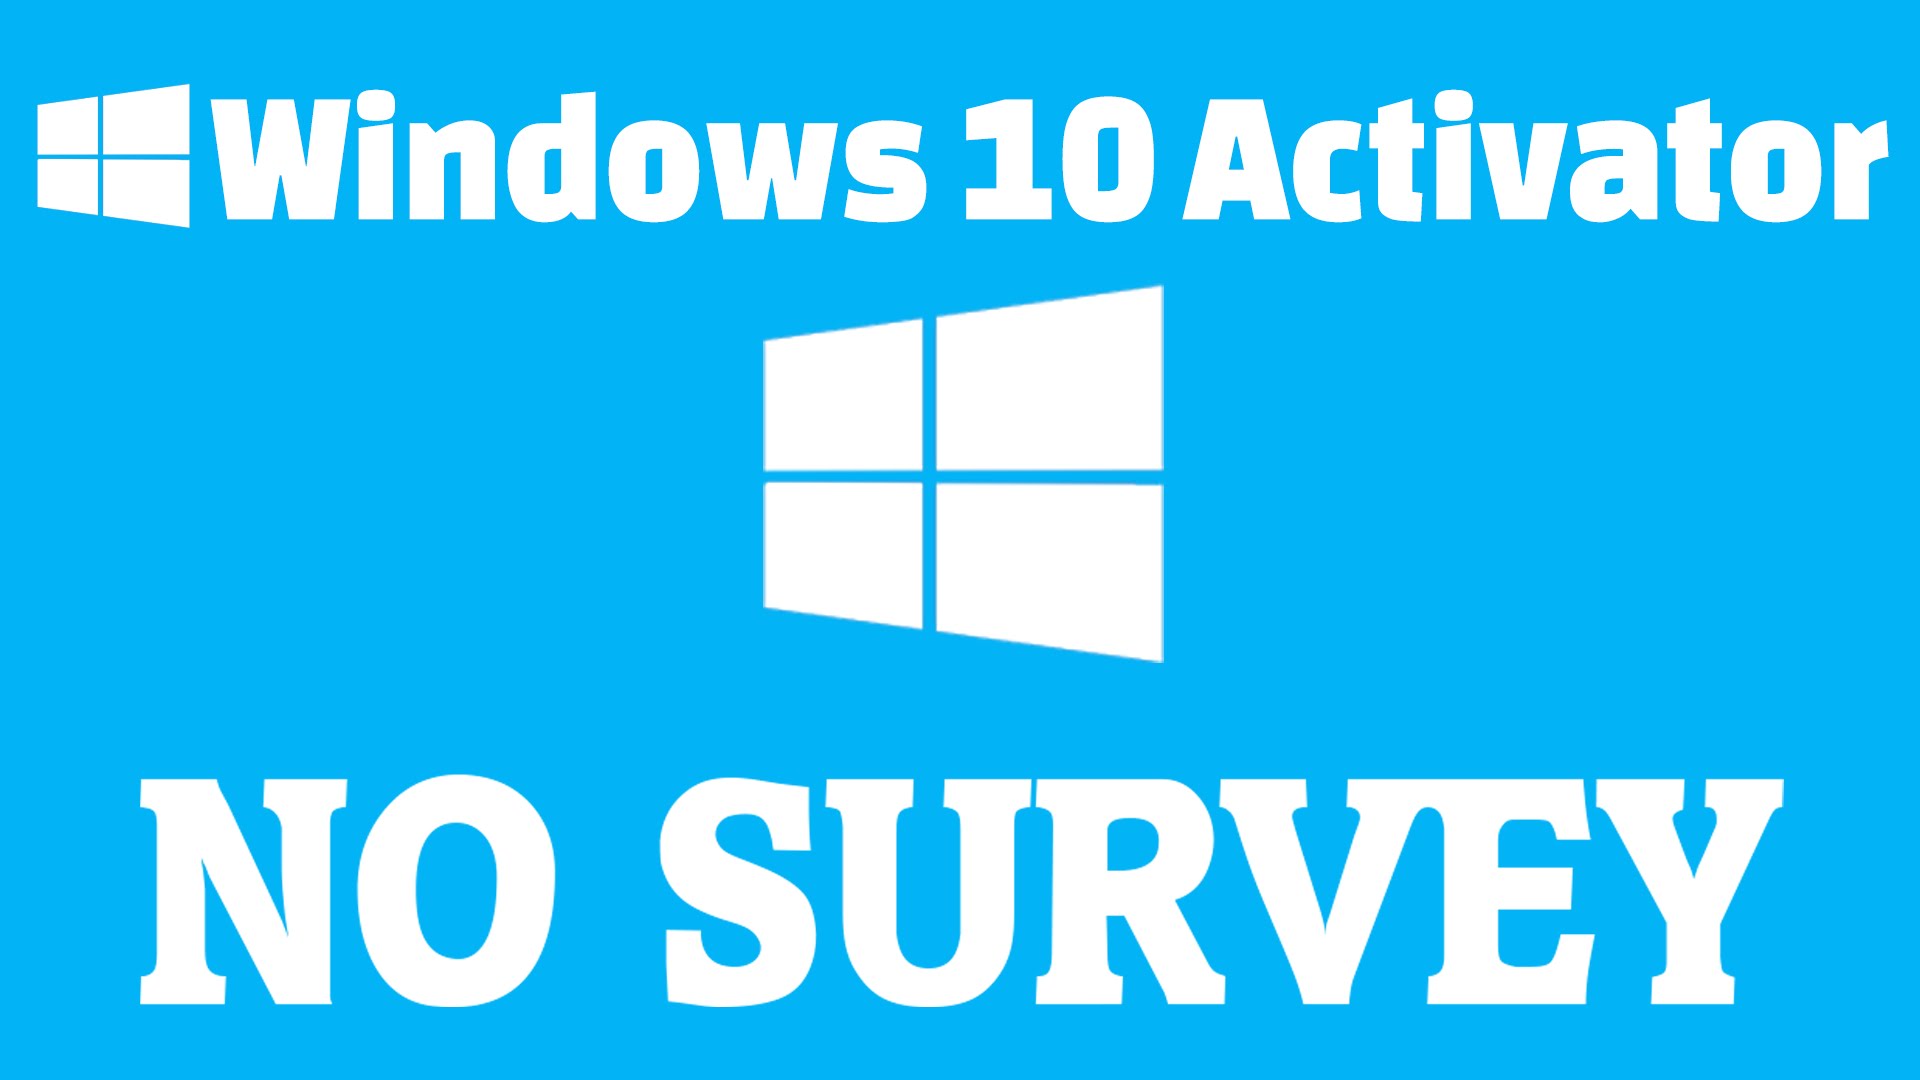 Активатор интернета. Активатор Windows. Активатор Windows 10. Активация Windows 10. Activation Windows 10.